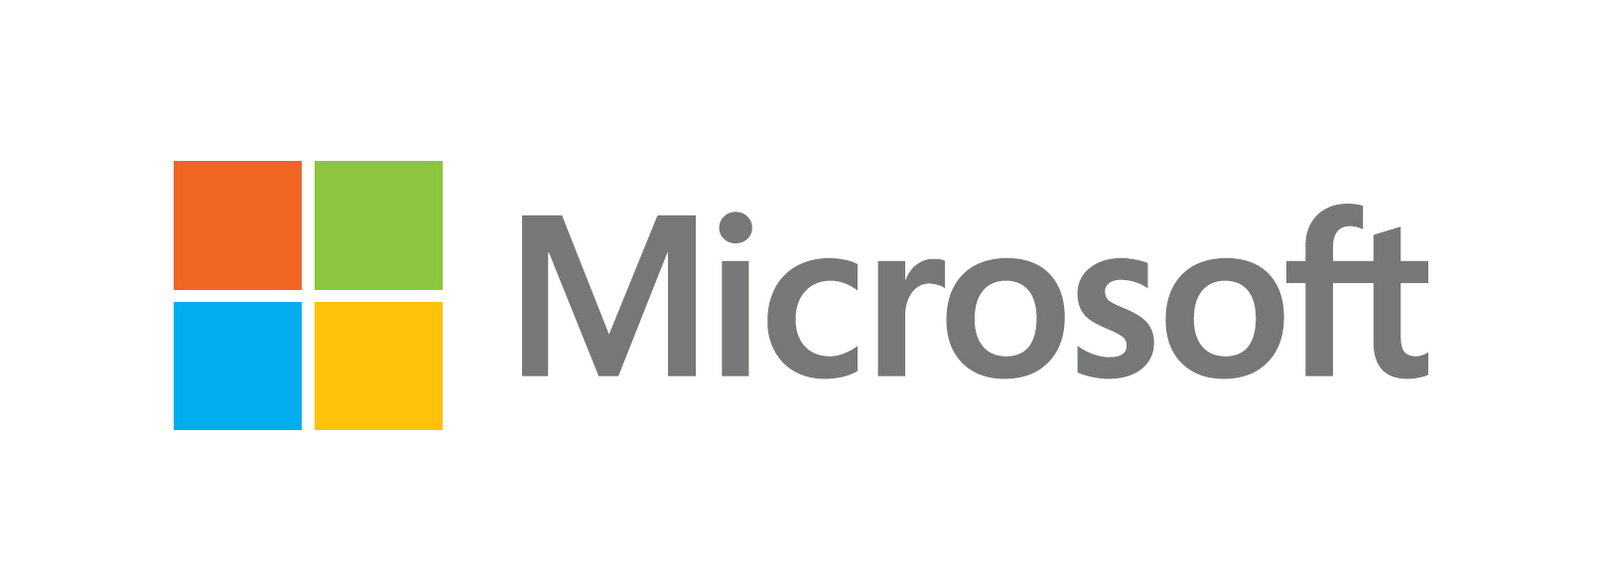 Microsoft White Logo Wallpaper